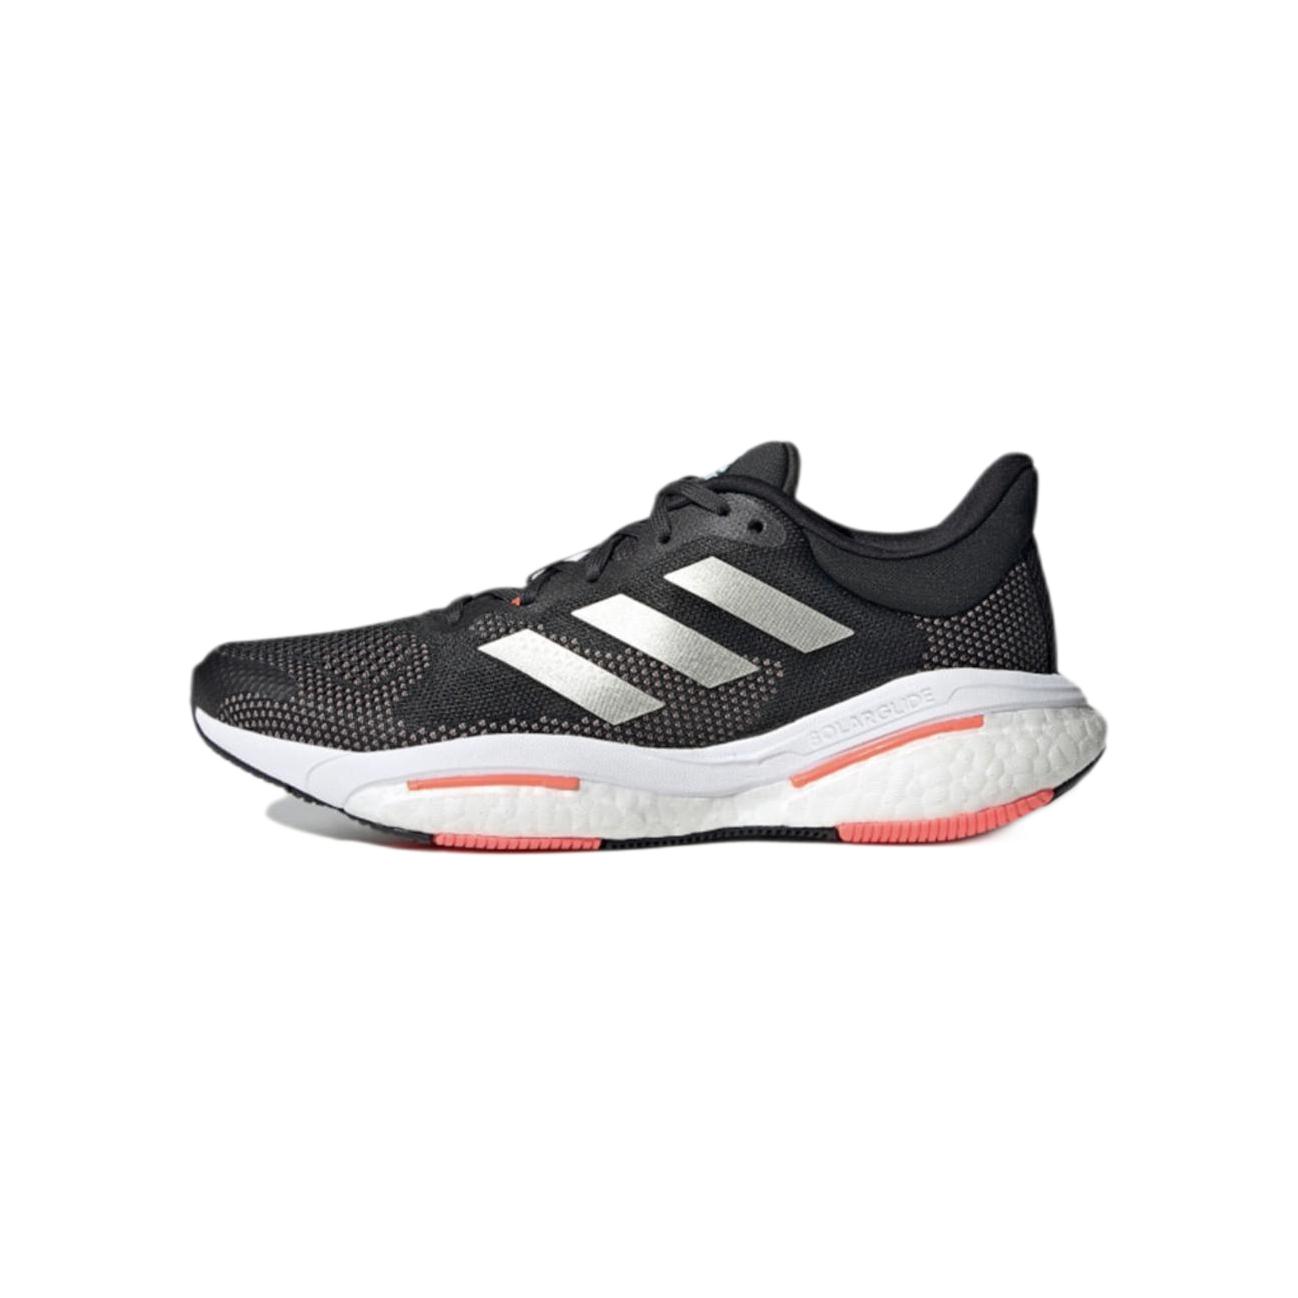 adidas 阿迪达斯 Solar Glide 5 W 女子跑鞋 H01163